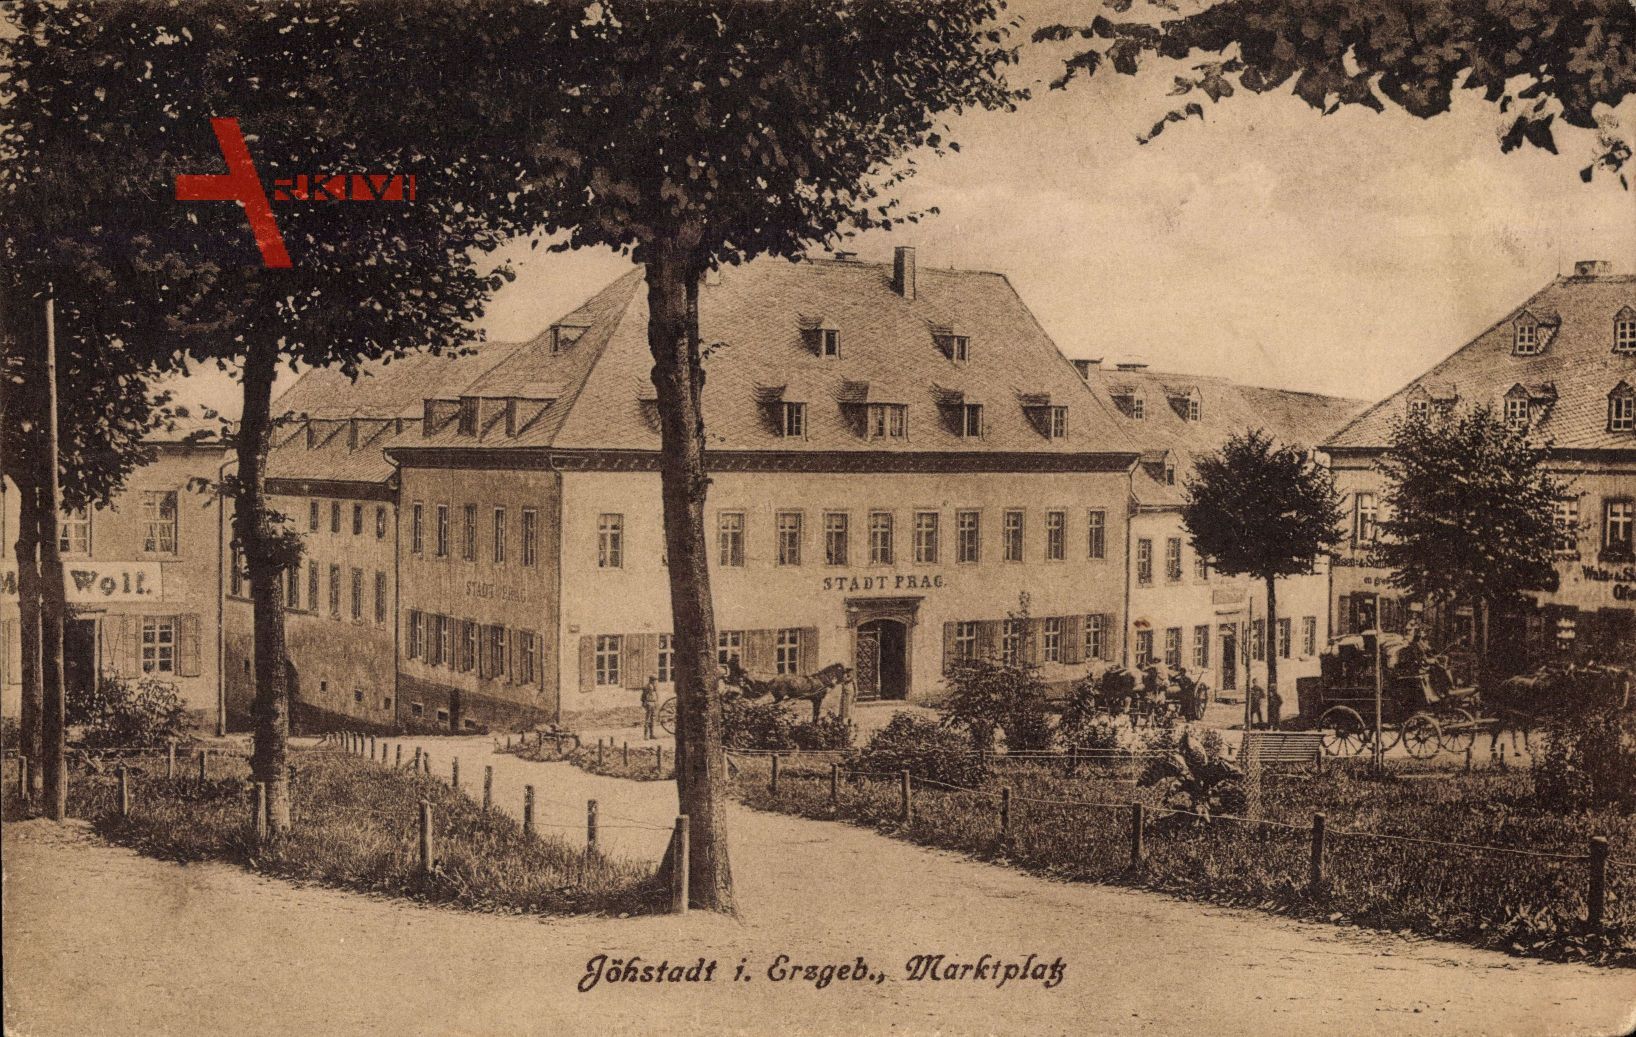 Jöhstadt Erzgebirge, Blick auf den Marktplatz, Haus Stadt Prag